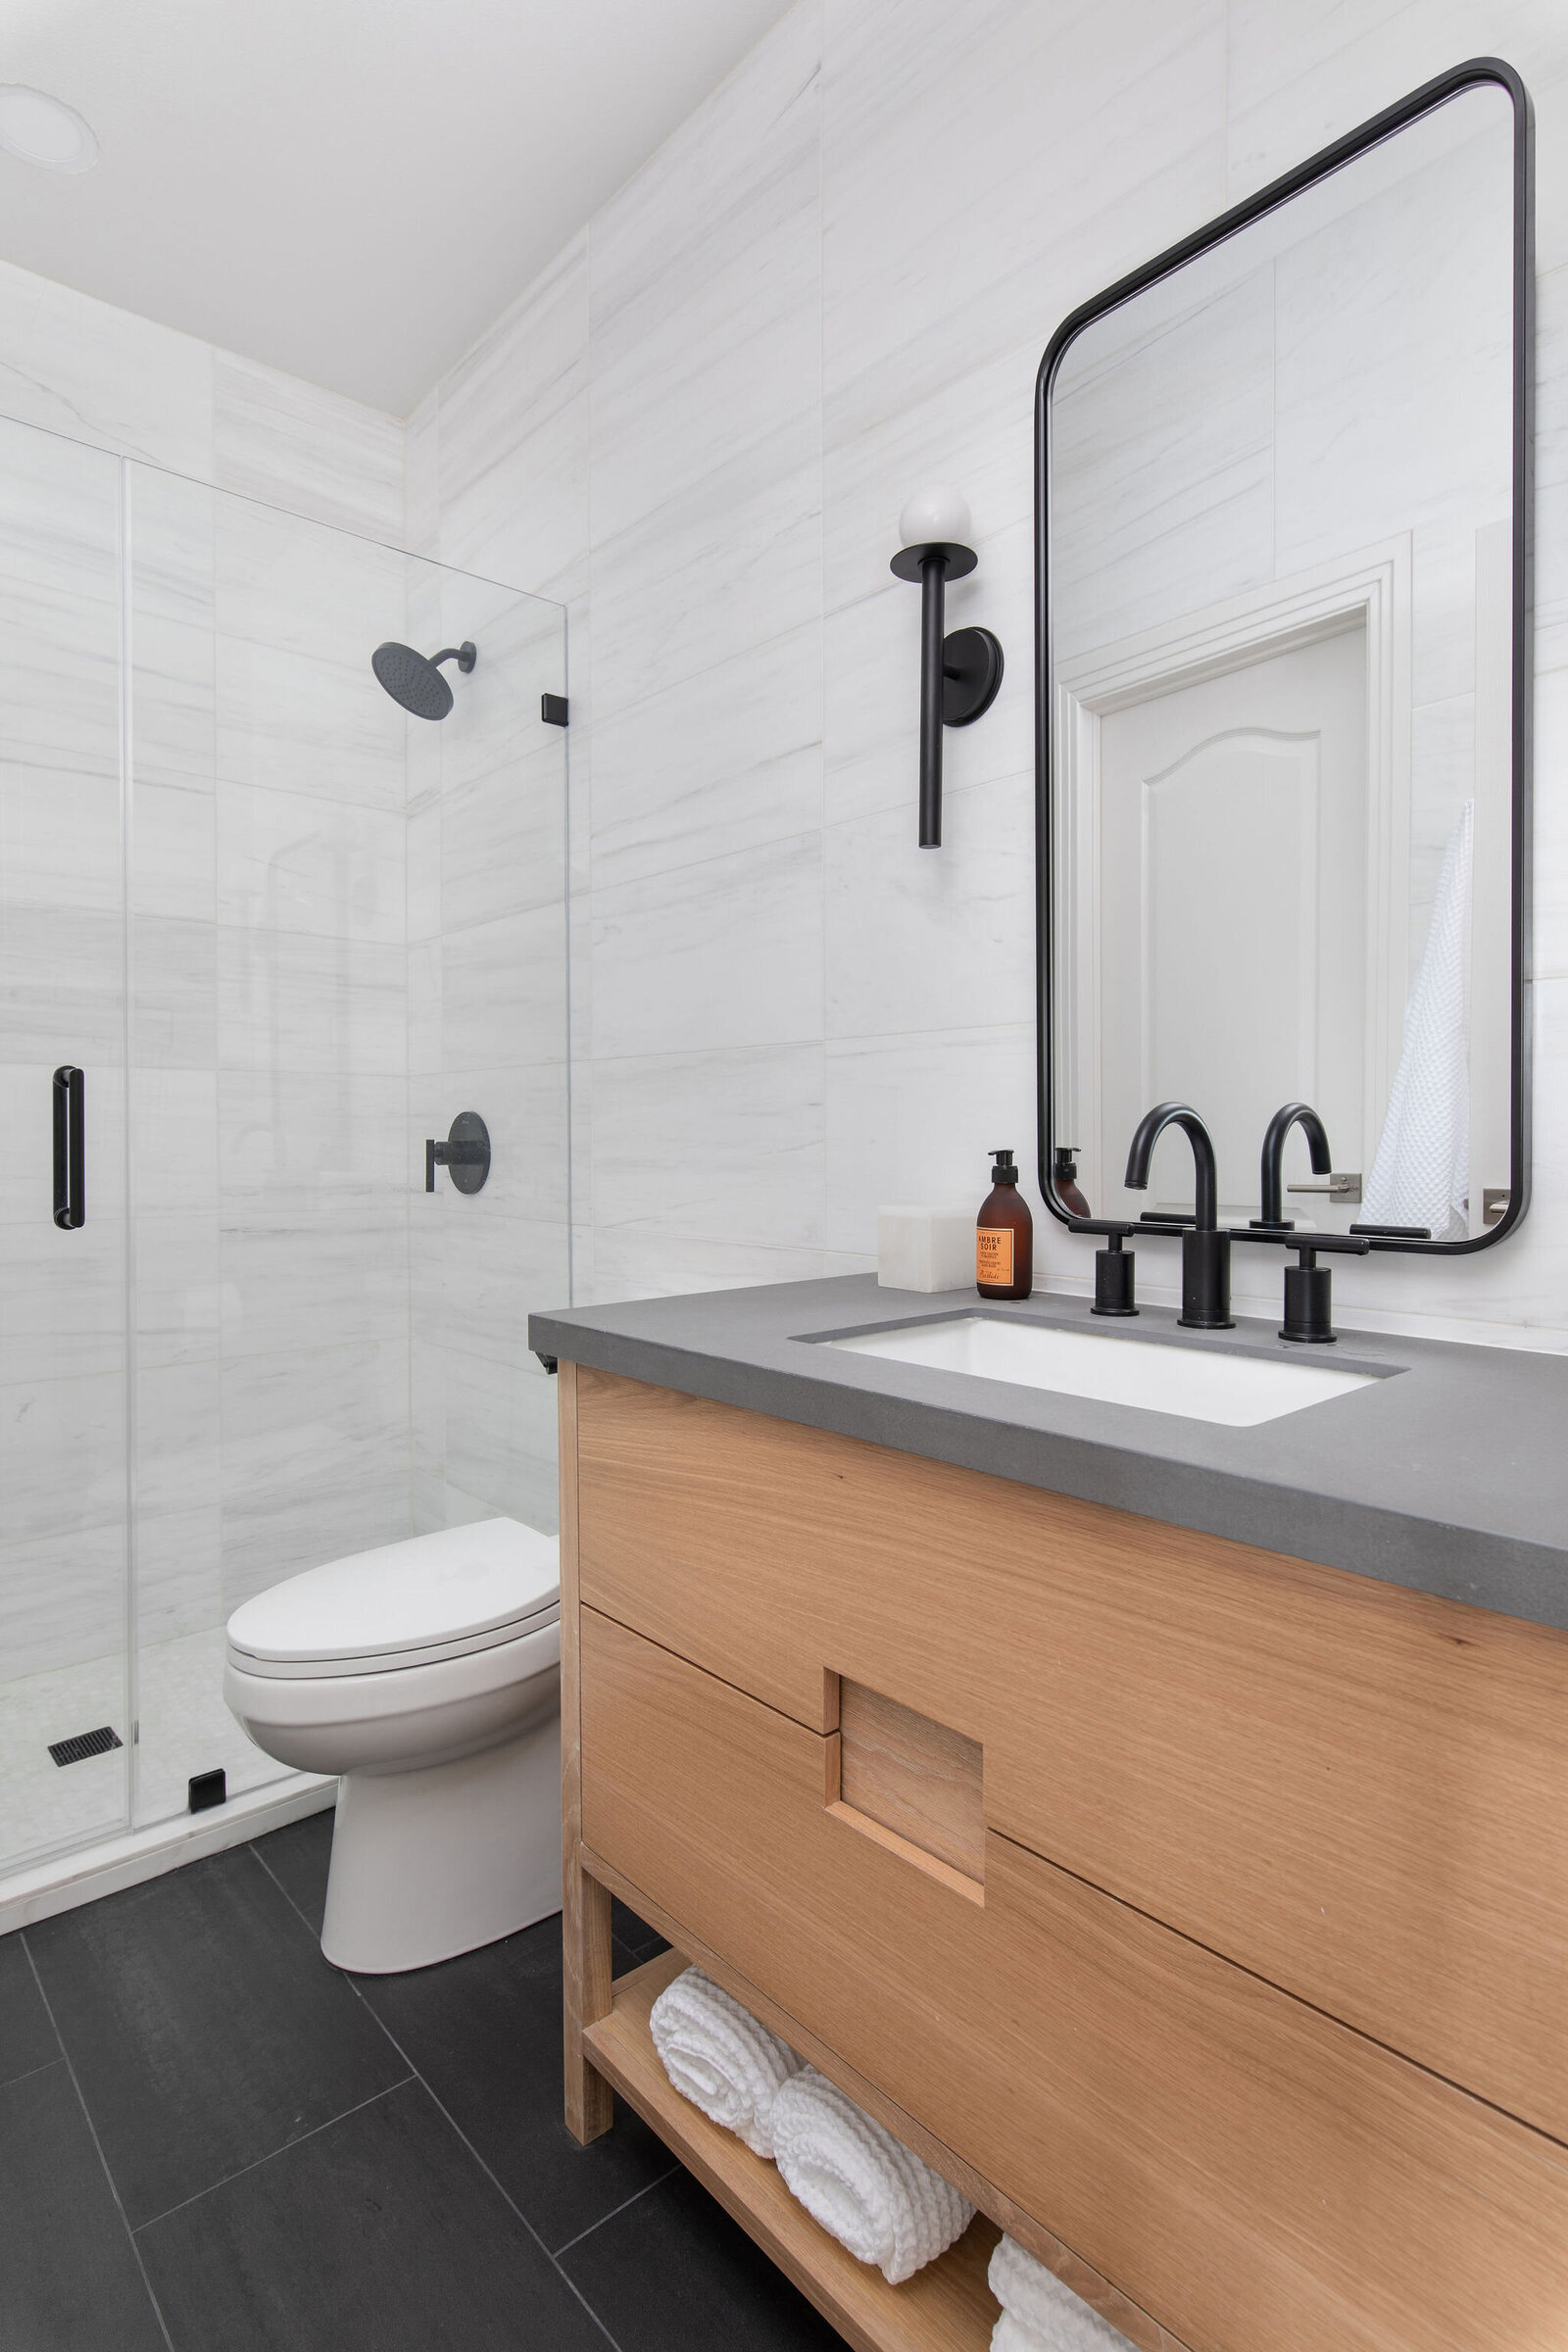 Marble+Wall+Tile+Gray+Counter+Wood+Vanity+Black+Mirror+Bathroom+Remodel